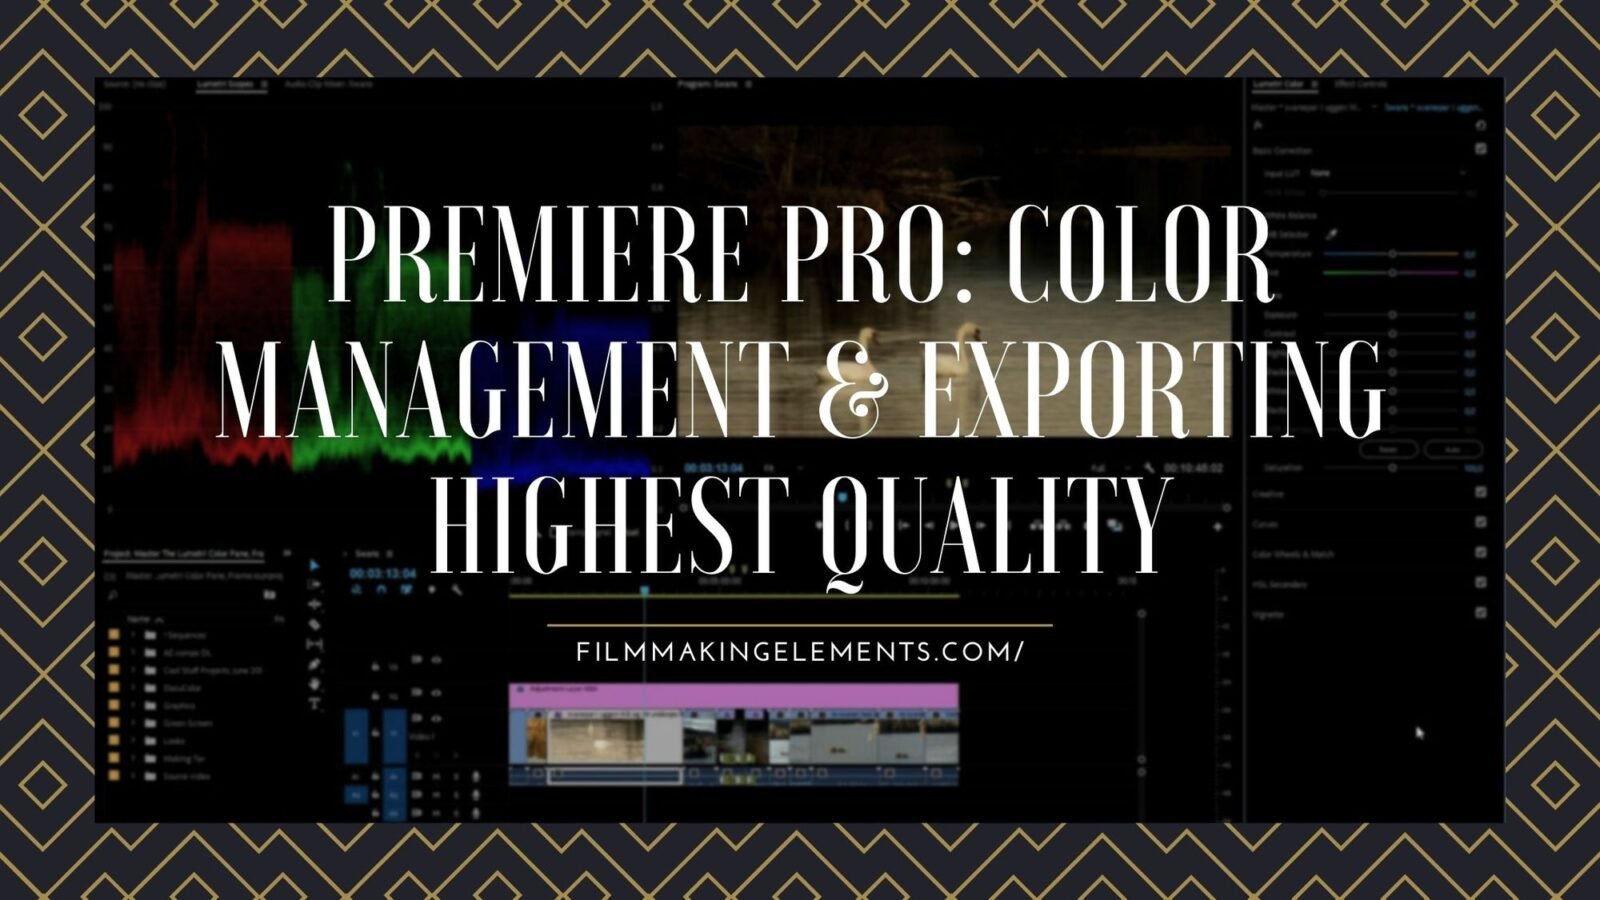 Premiere Pro: Color Management & Export Highest Quality